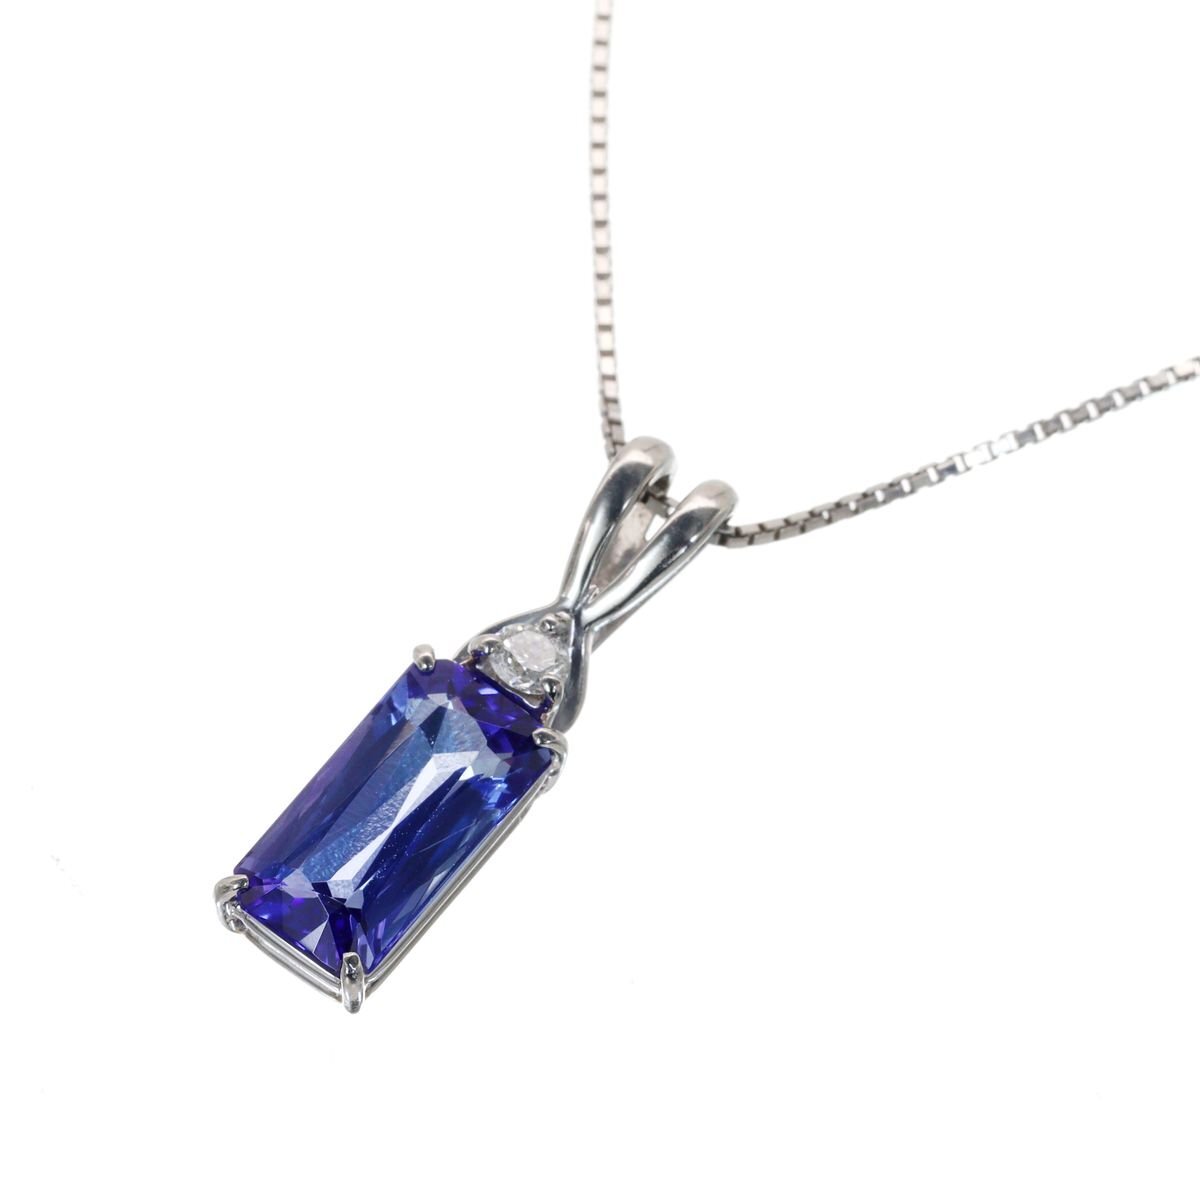 神秘的な青の煌めき Pt850/900 タンザナイト ダイヤモンド 3.6g 1.69ct 0.05ct ソーティング付 超美品 ◎04B37